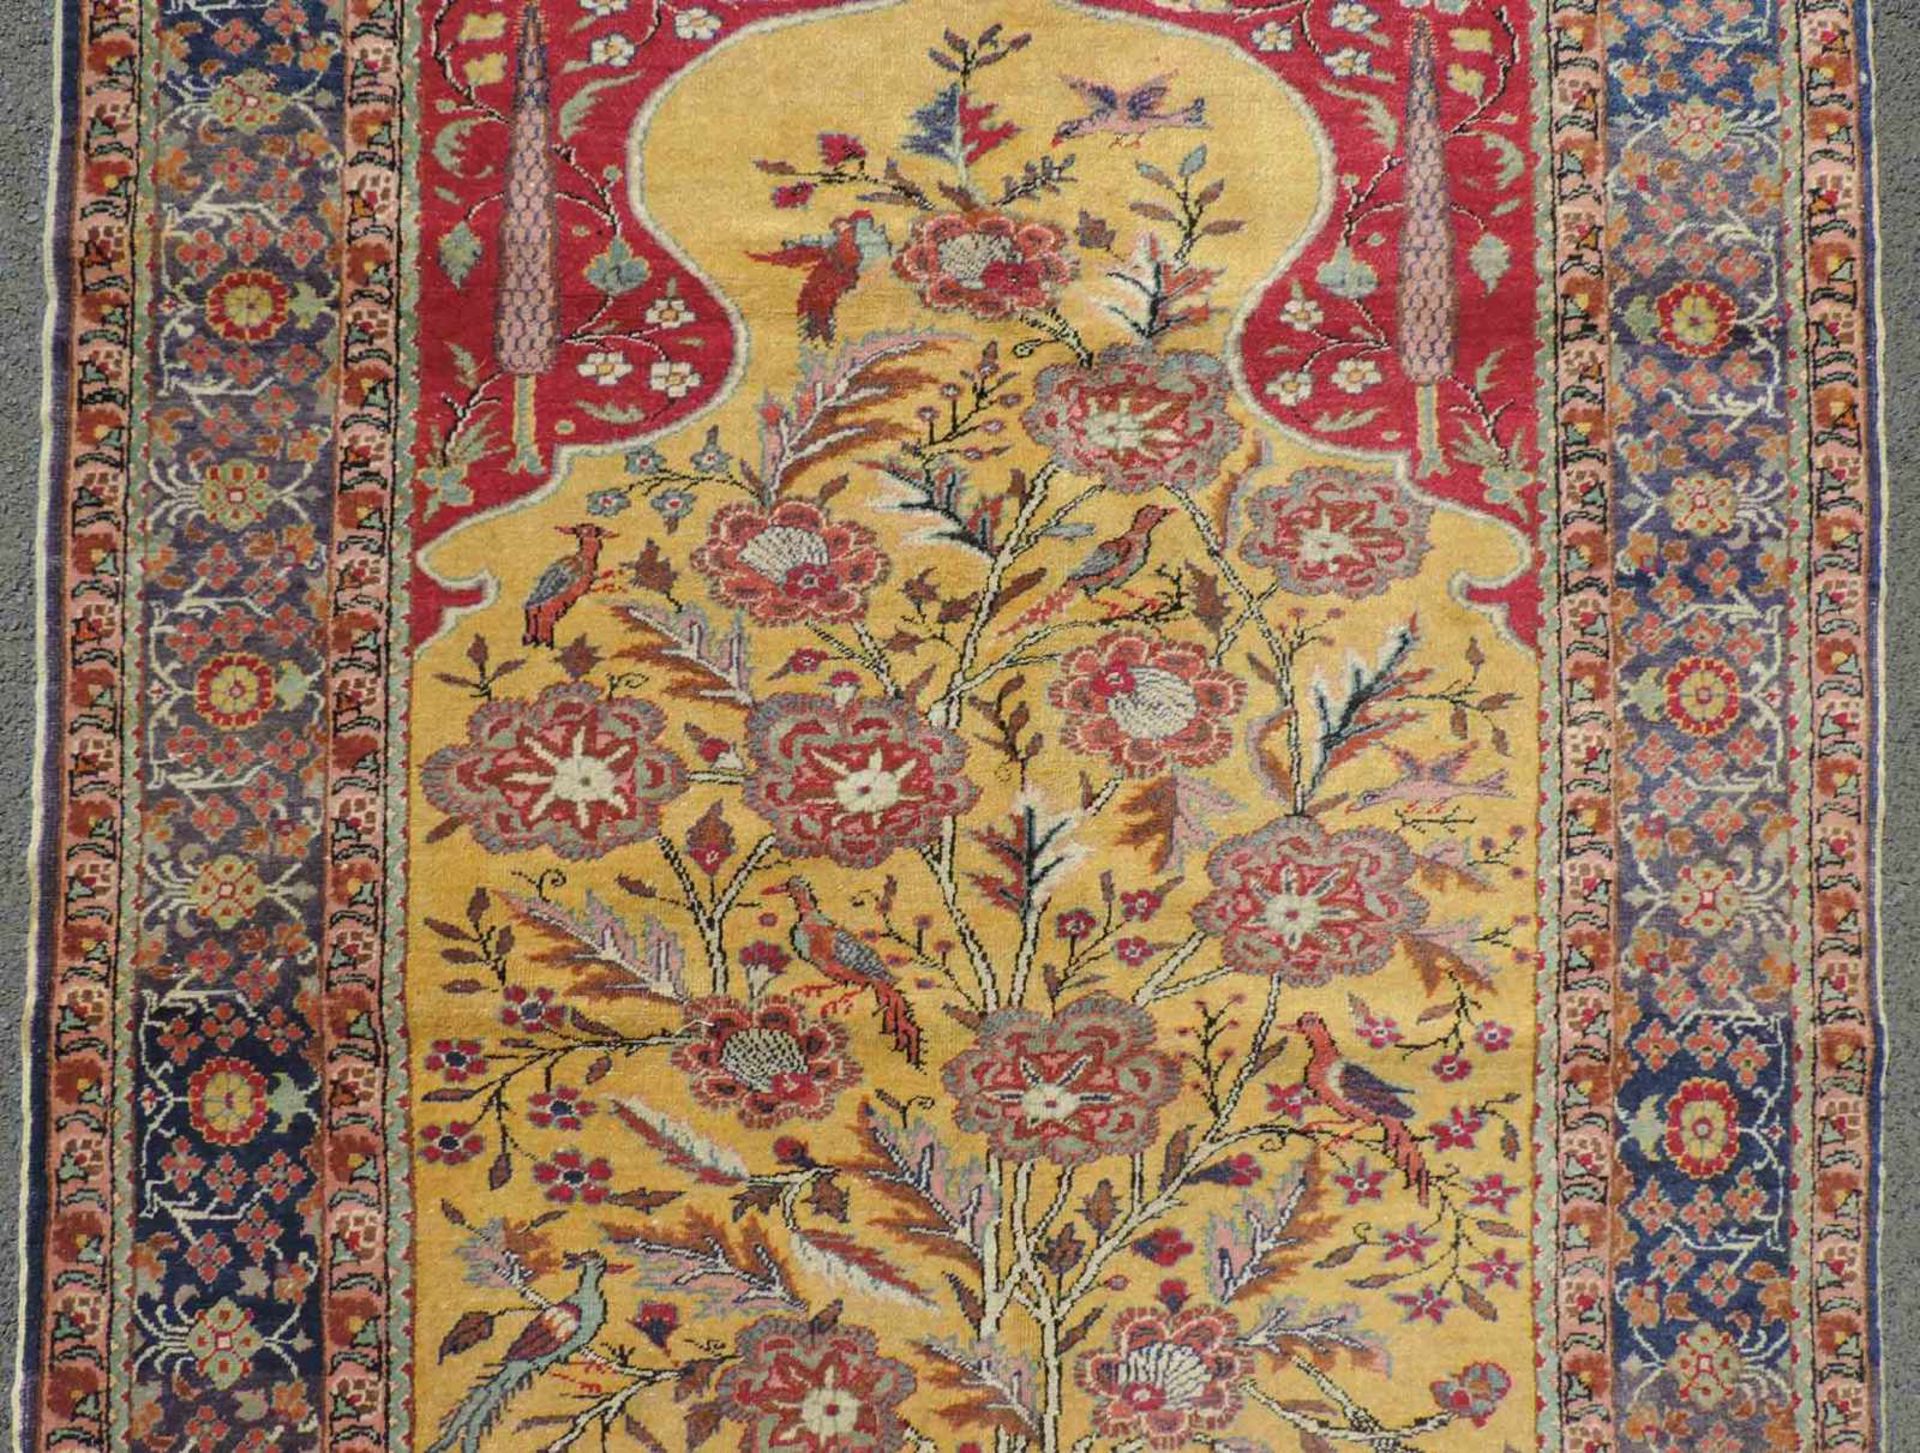 Kayseri Gebetsteppich. Türkei. Antik. Um 1910. 176 cm x 122 cm. Handgeknüpft. Wolle auf Baumwolle. - Bild 3 aus 6